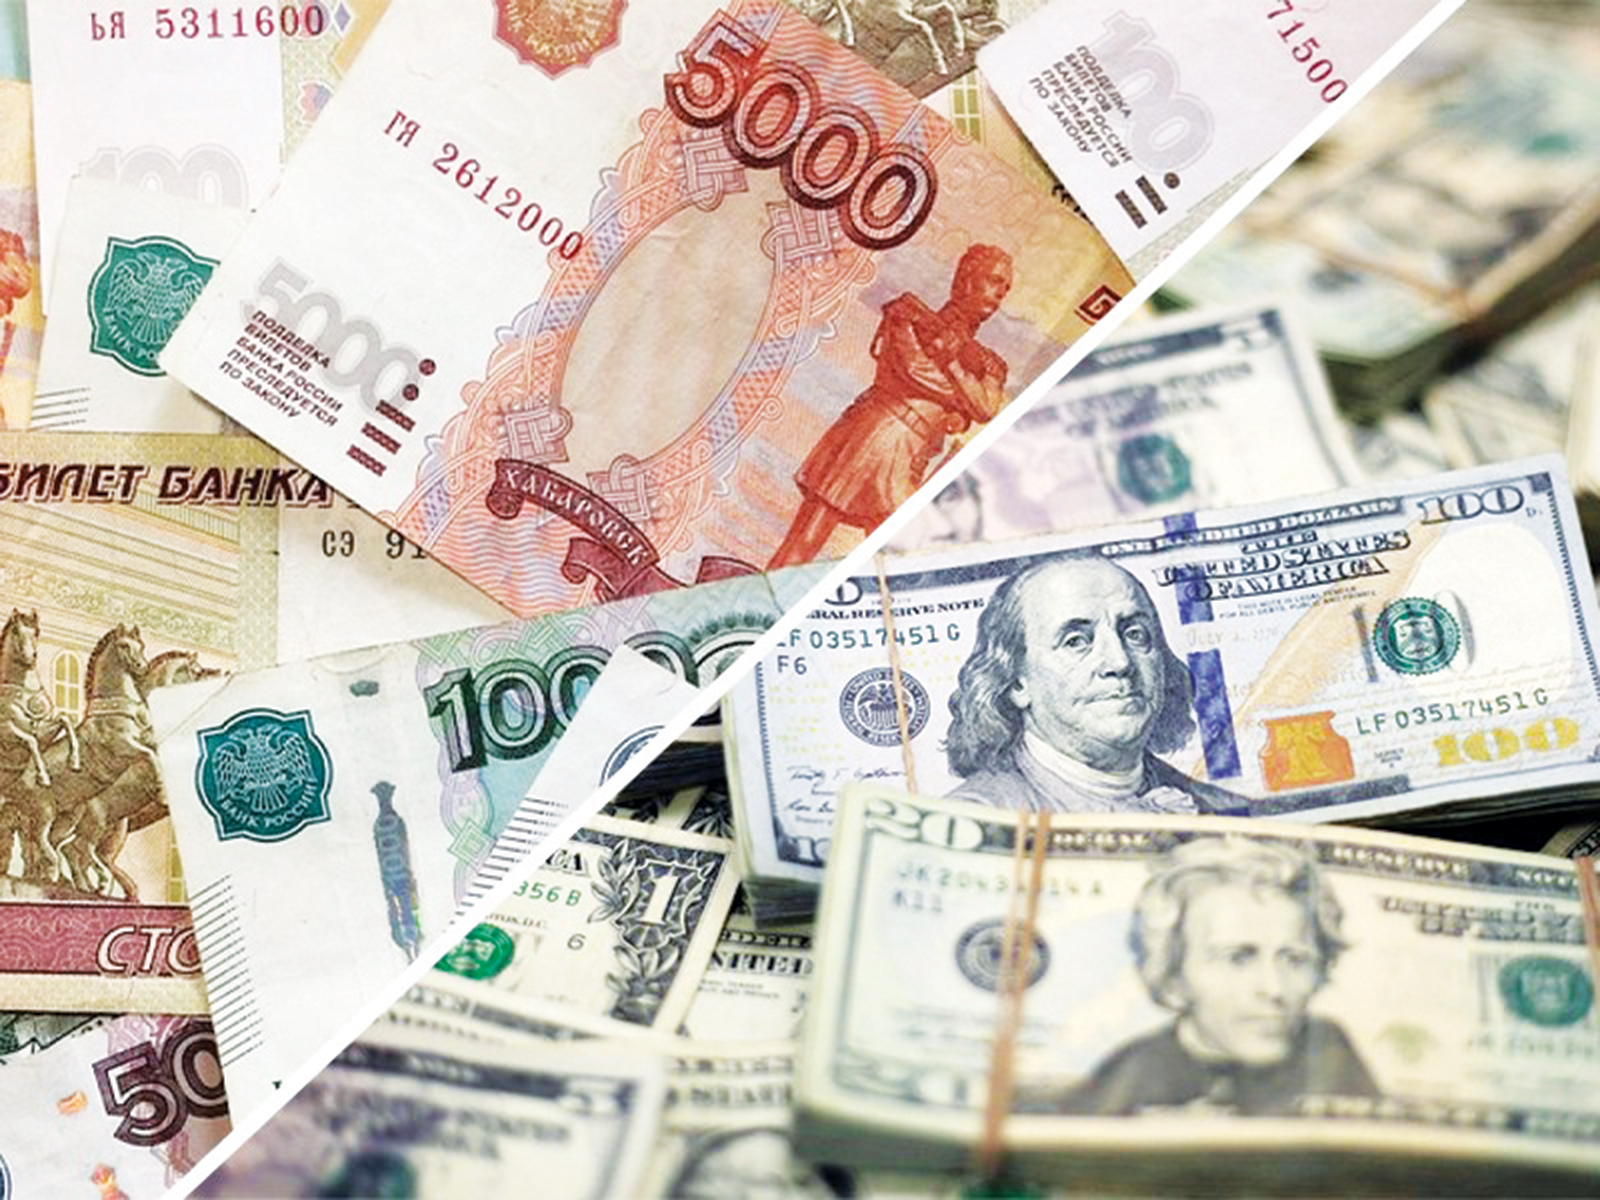 سعر صرف الدولار يلامس 100 روبل لأول مرة منذ 15 أغسطس